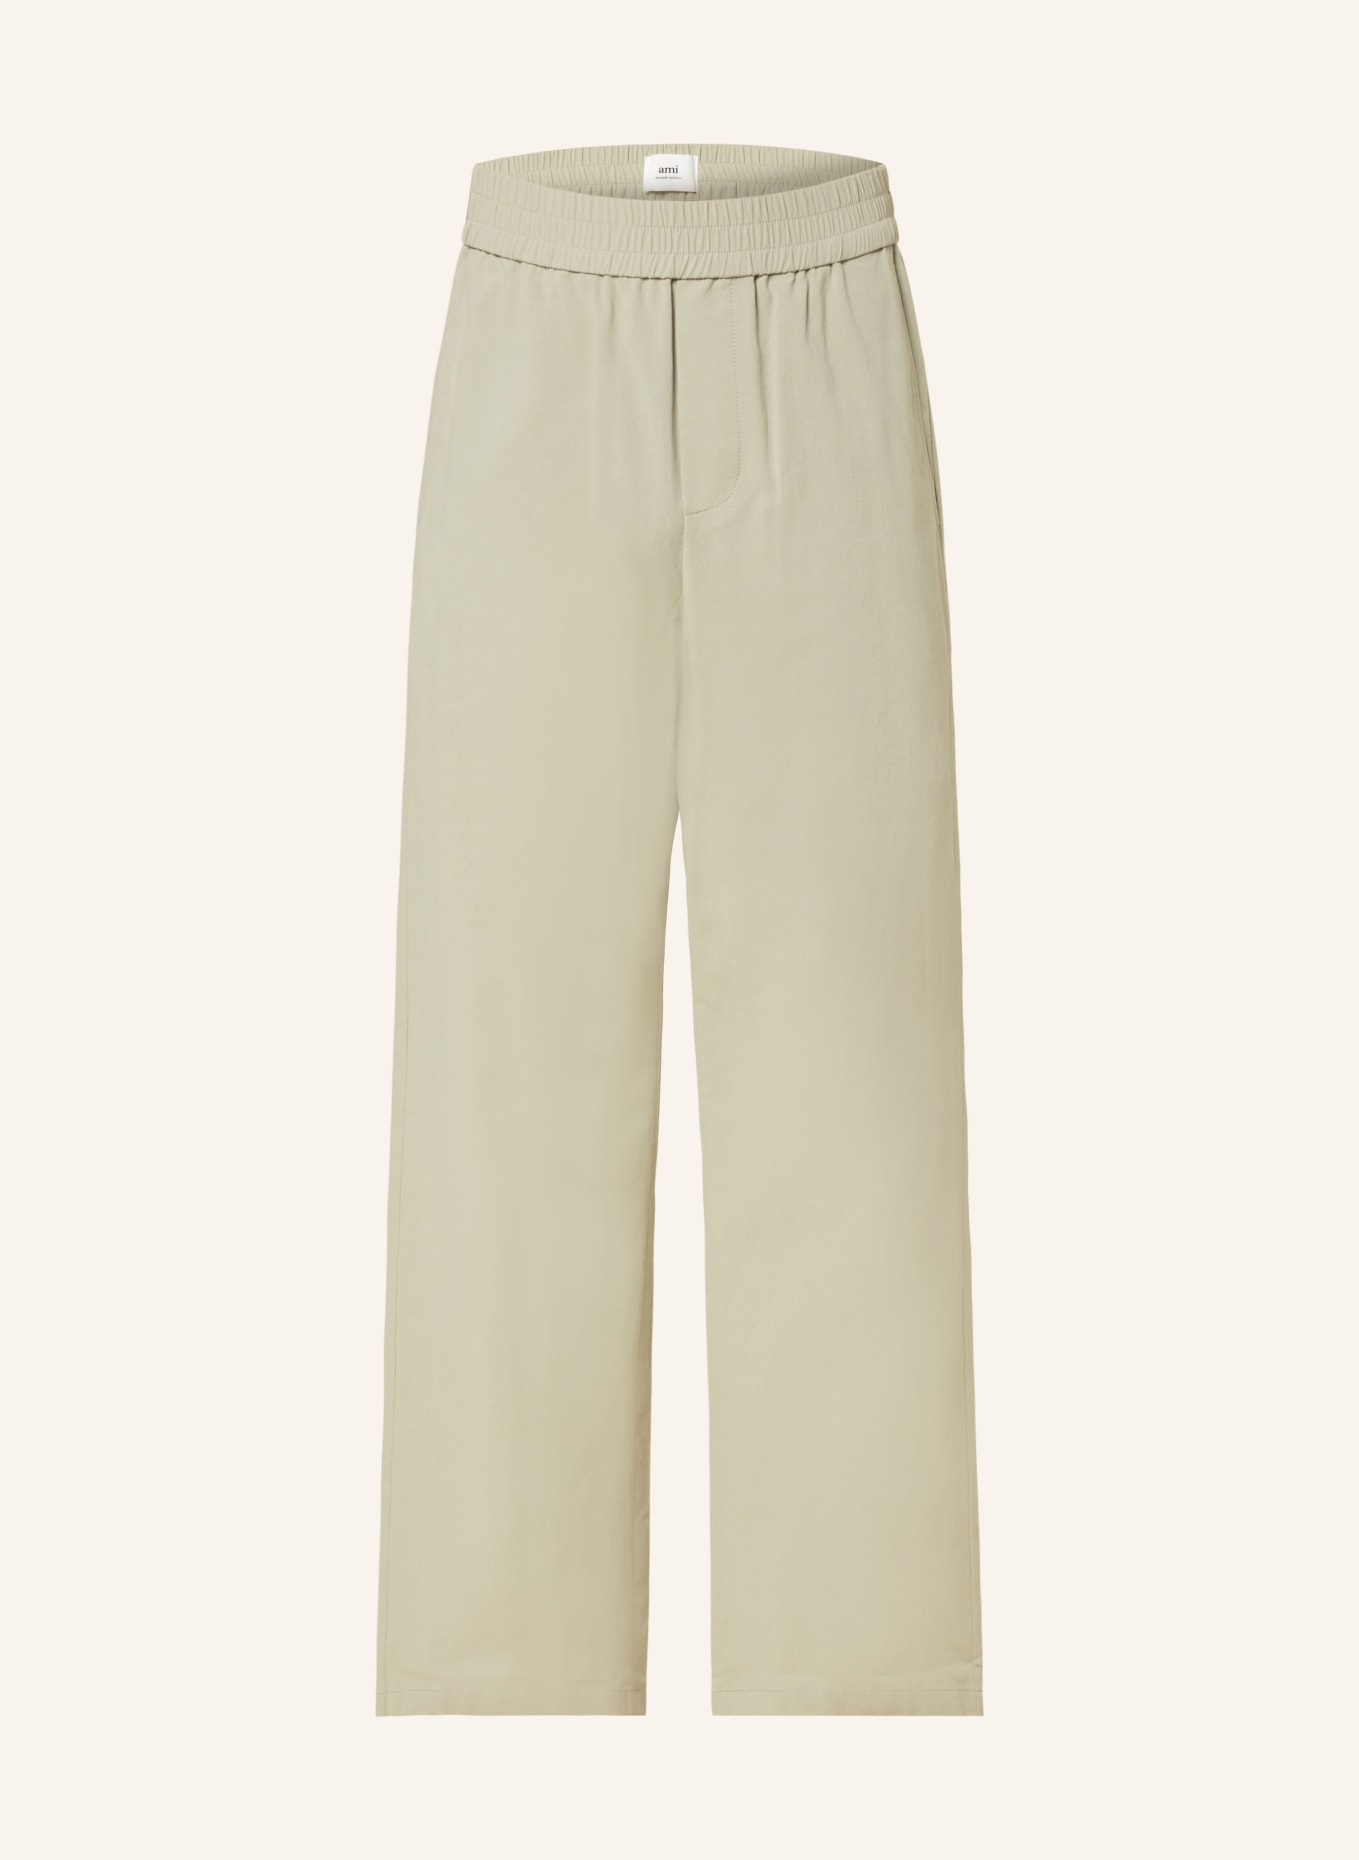 AMI PARIS Trousers regular fit, Color: 317 SAGE (Image 1)